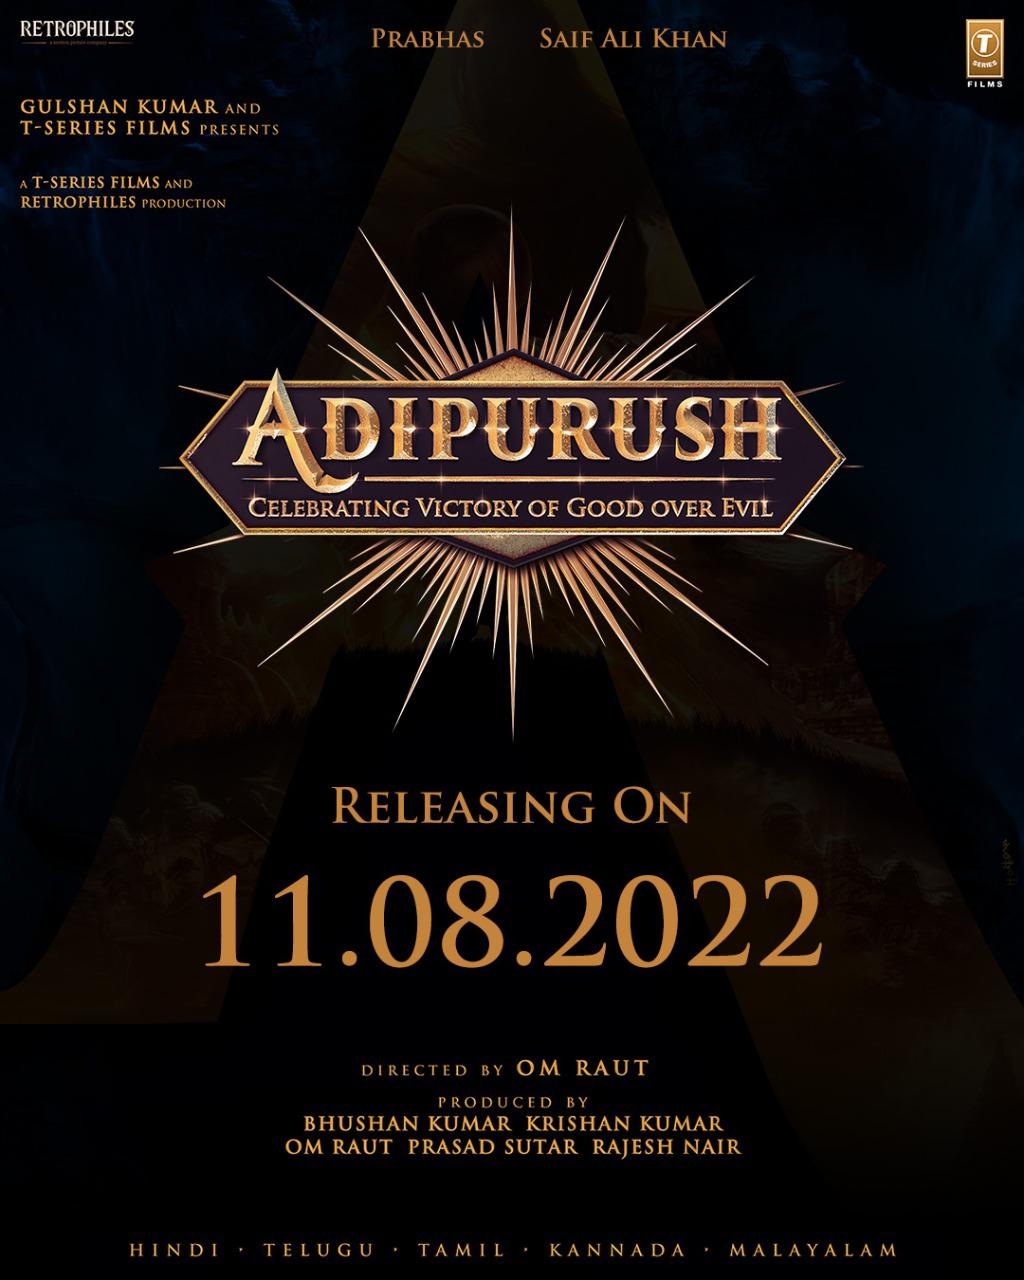 Adipurush Prabhas Release Date Announced